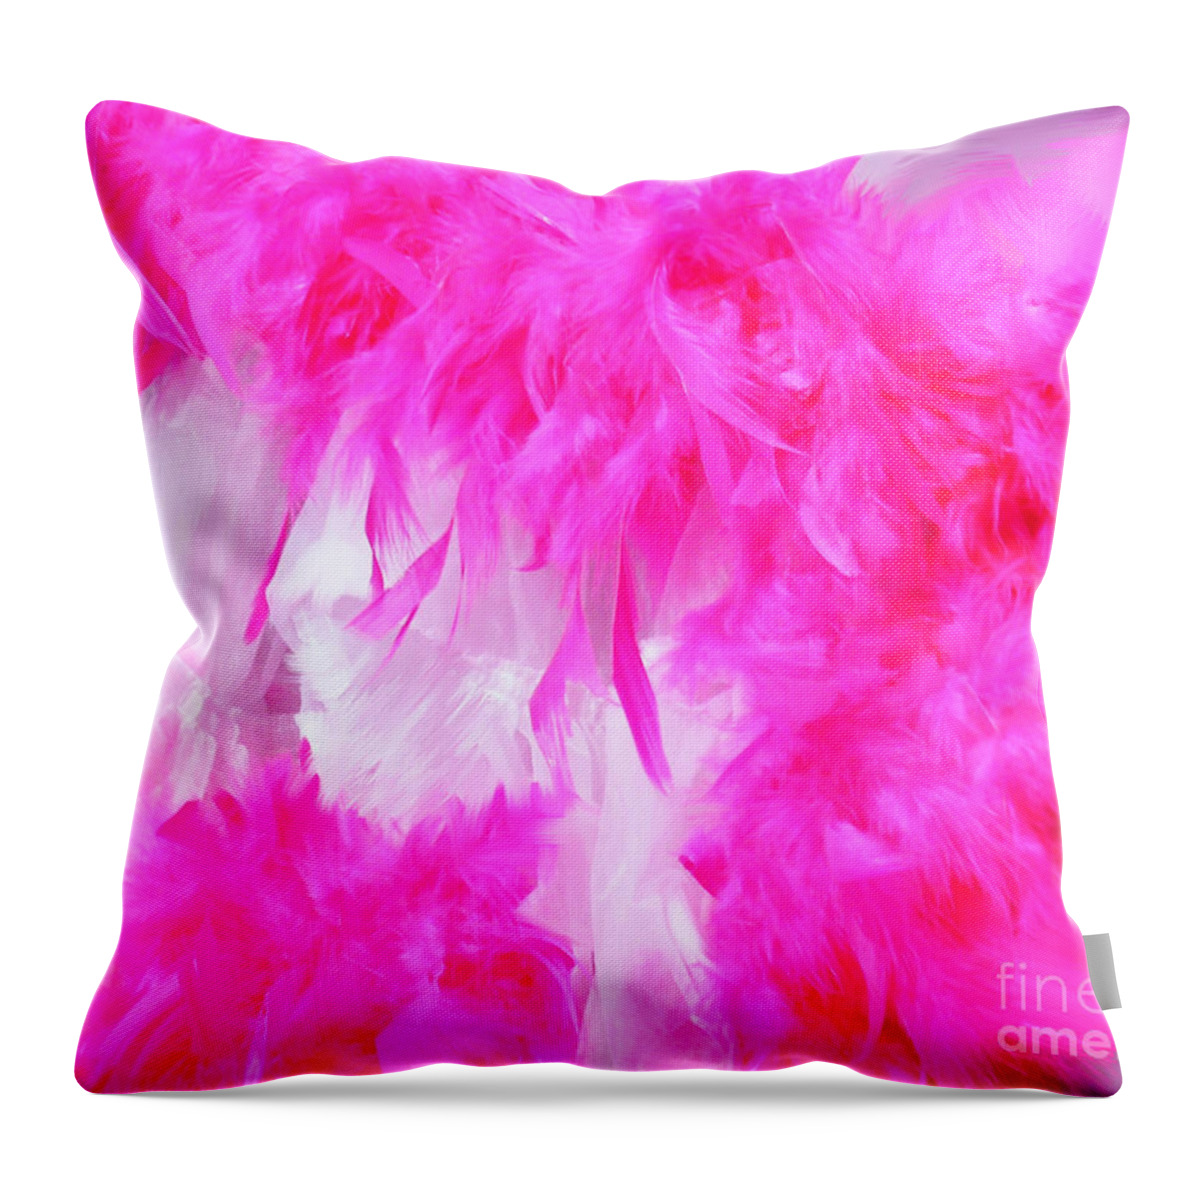 Mardi Gras Throw Pillow featuring the digital art Fluff by Lizi Beard-Ward